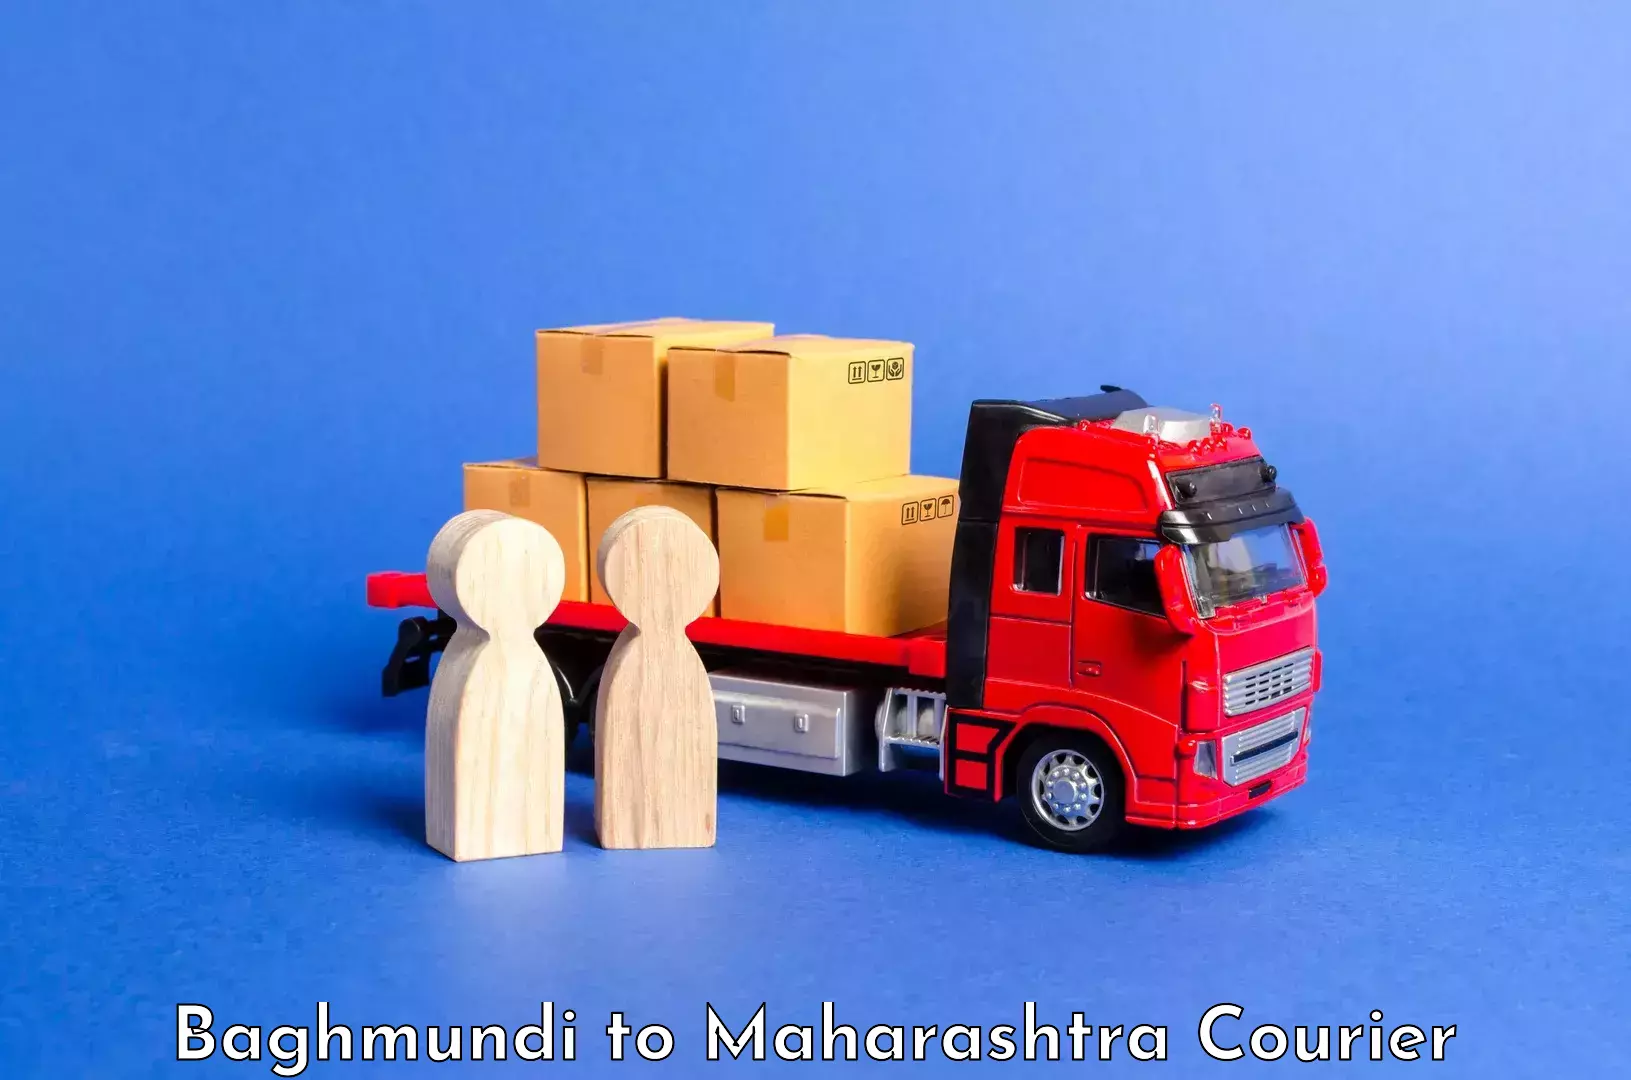 Baggage shipping experts Baghmundi to Kolhapur